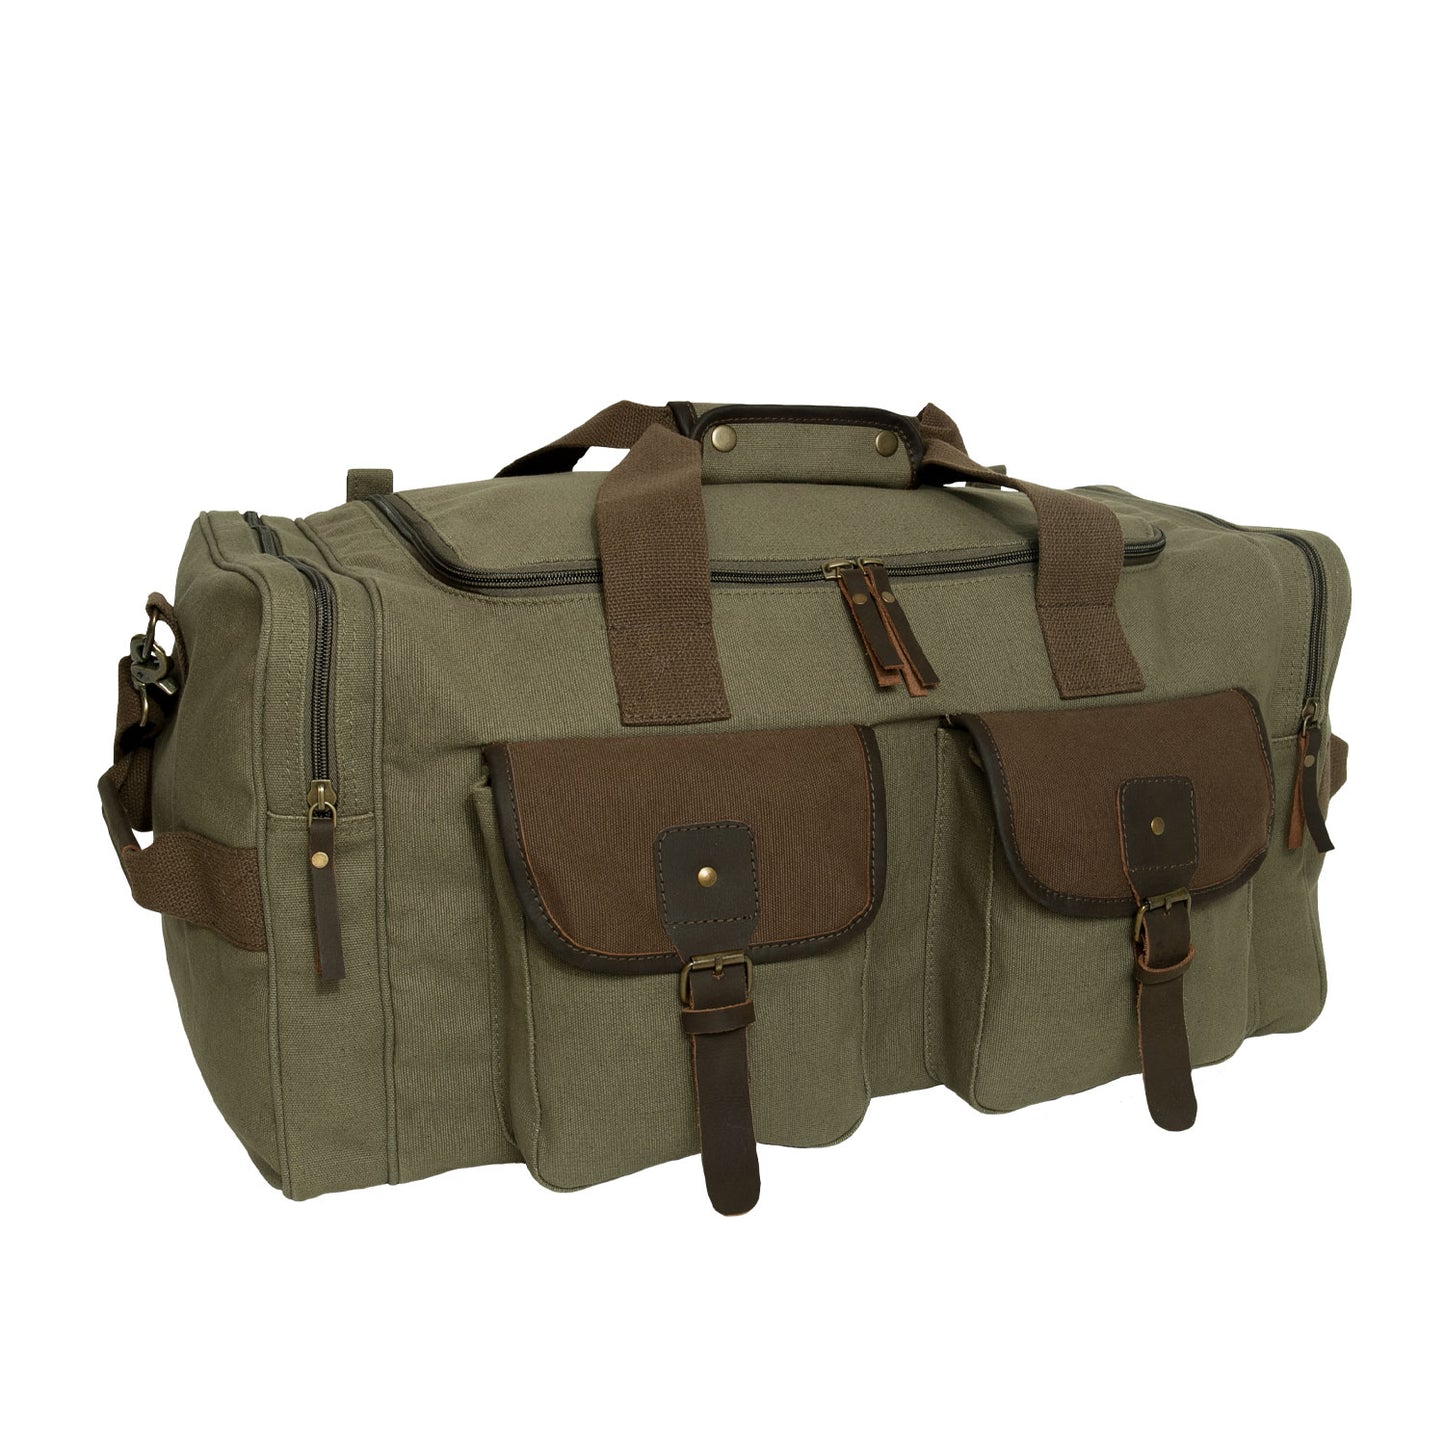 Milspec Long Journey Canvas Travel Bag Sneak Previews MilTac Tactical Military Outdoor Gear Australia